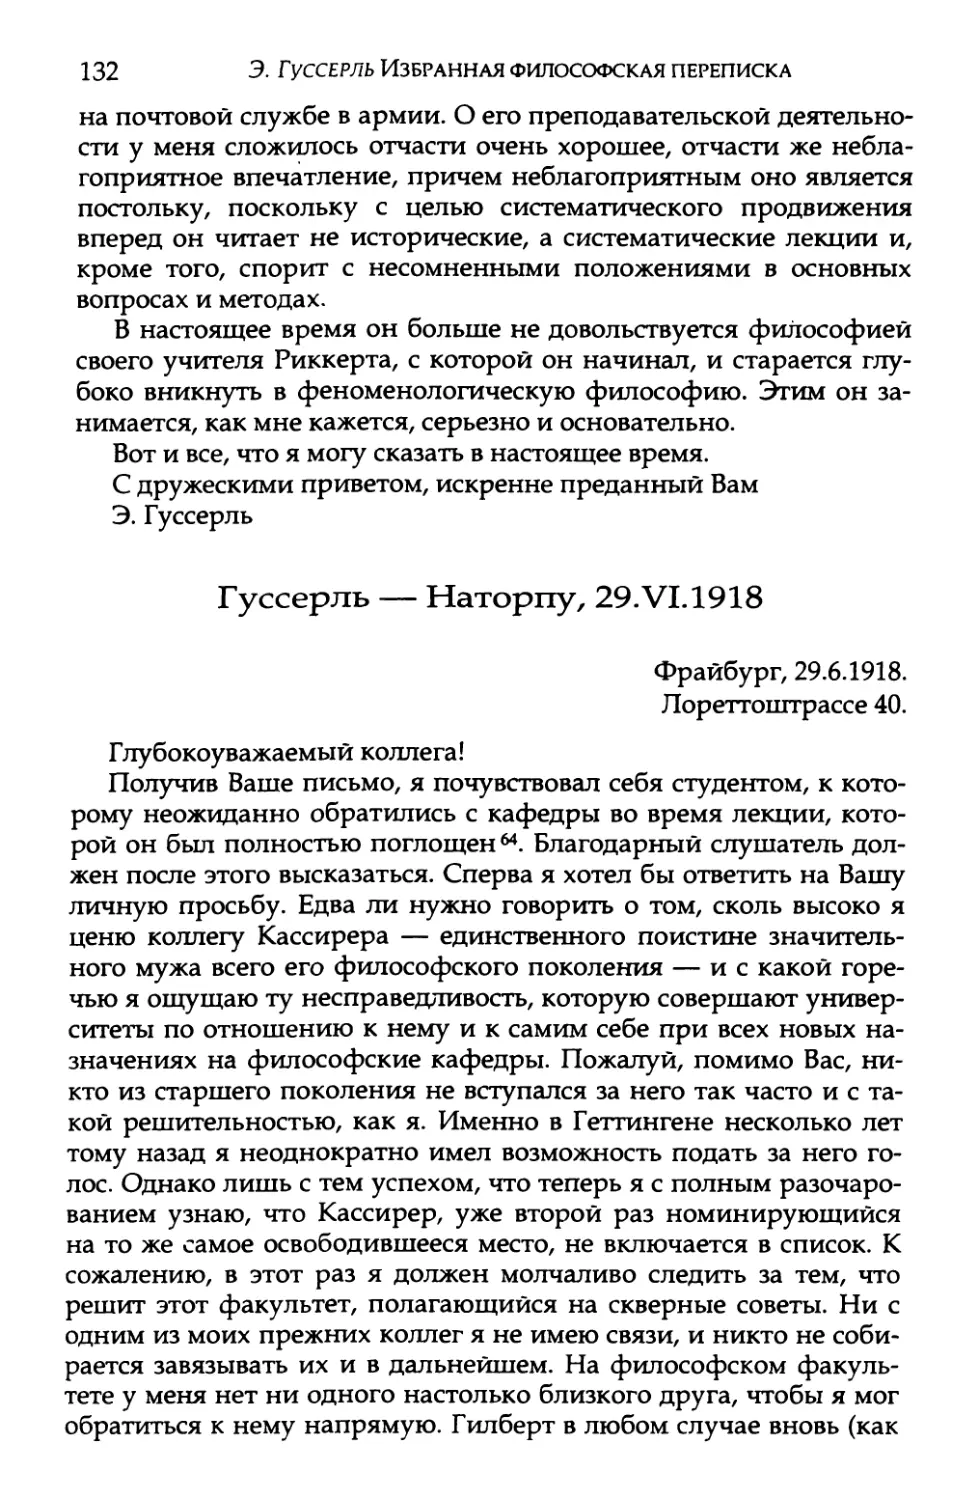 Гуссерль — Наторпу, 29.VI.1918